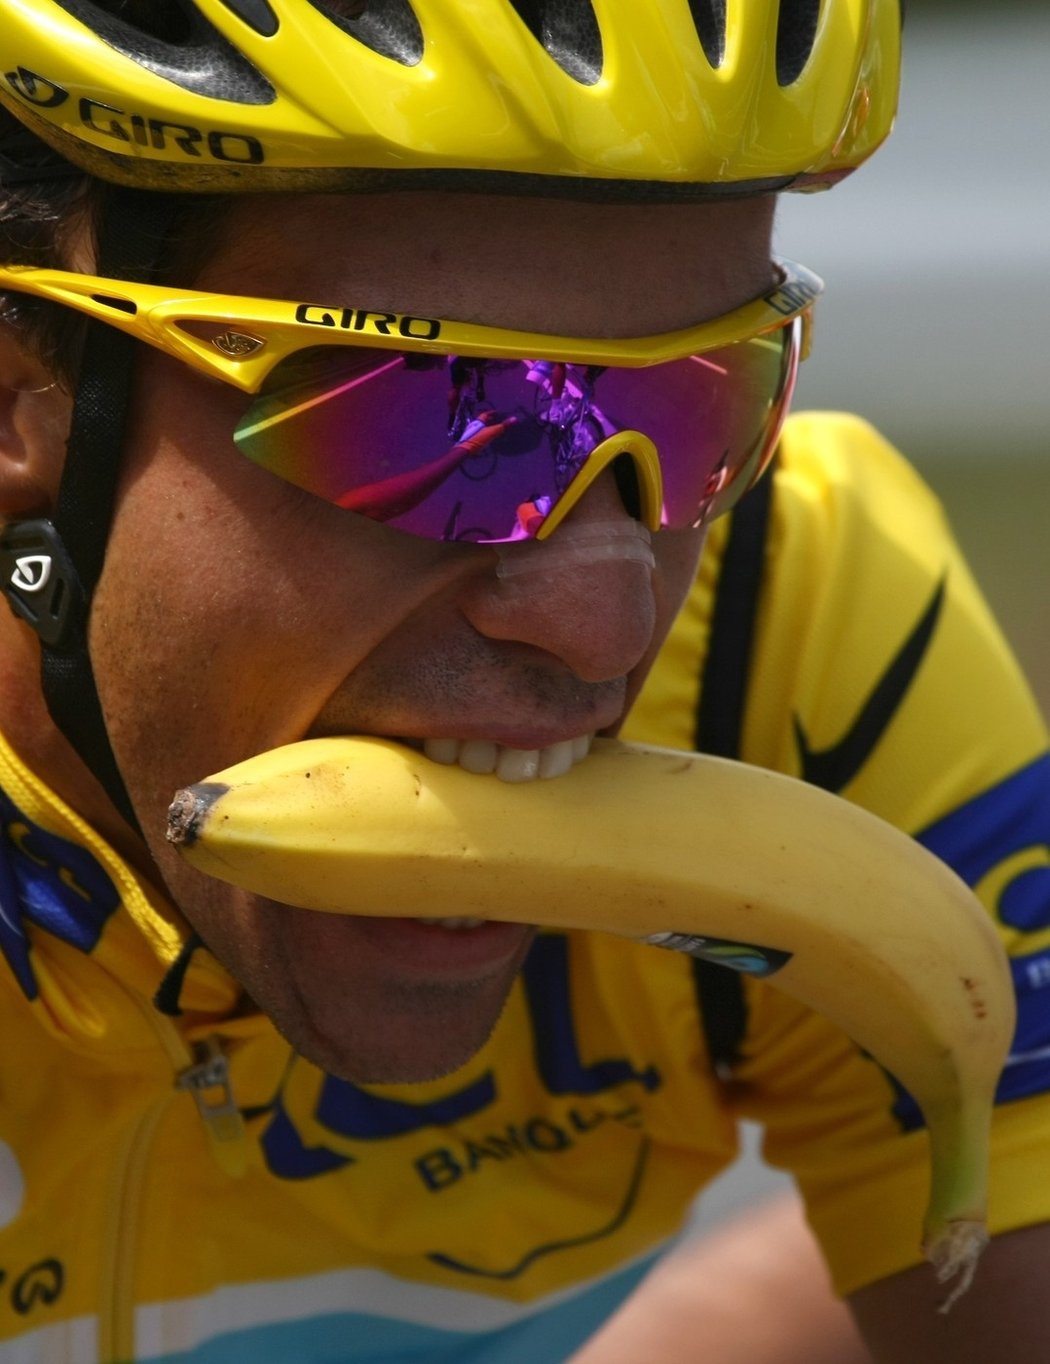 Už jste někdy zkoušeli oloupat banán za jízdy na kole?